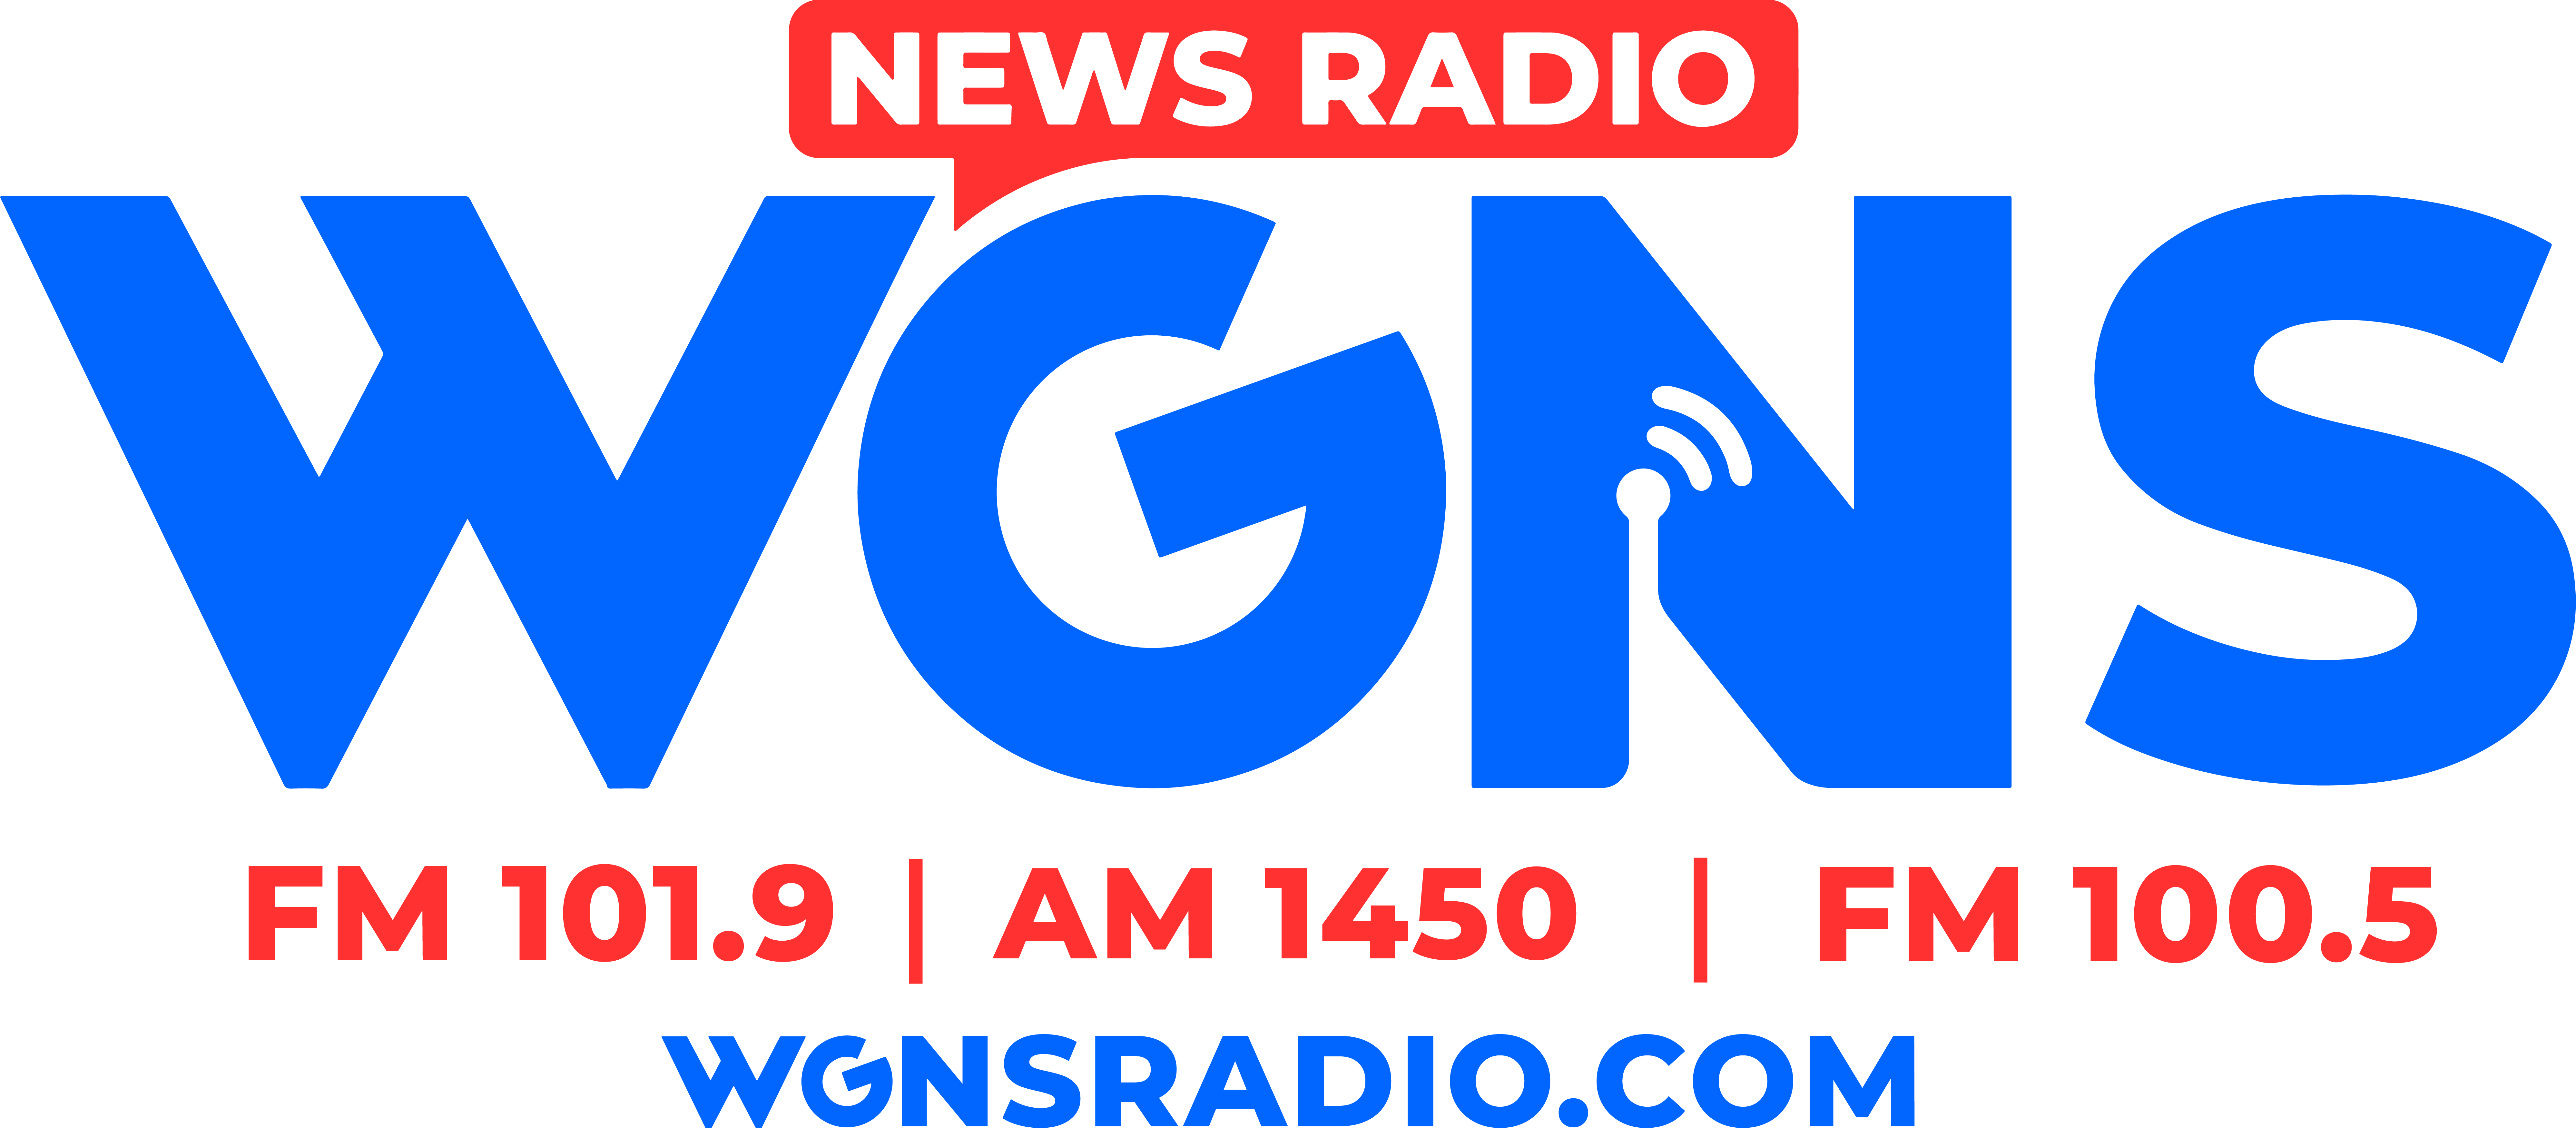 WGNS News Radio